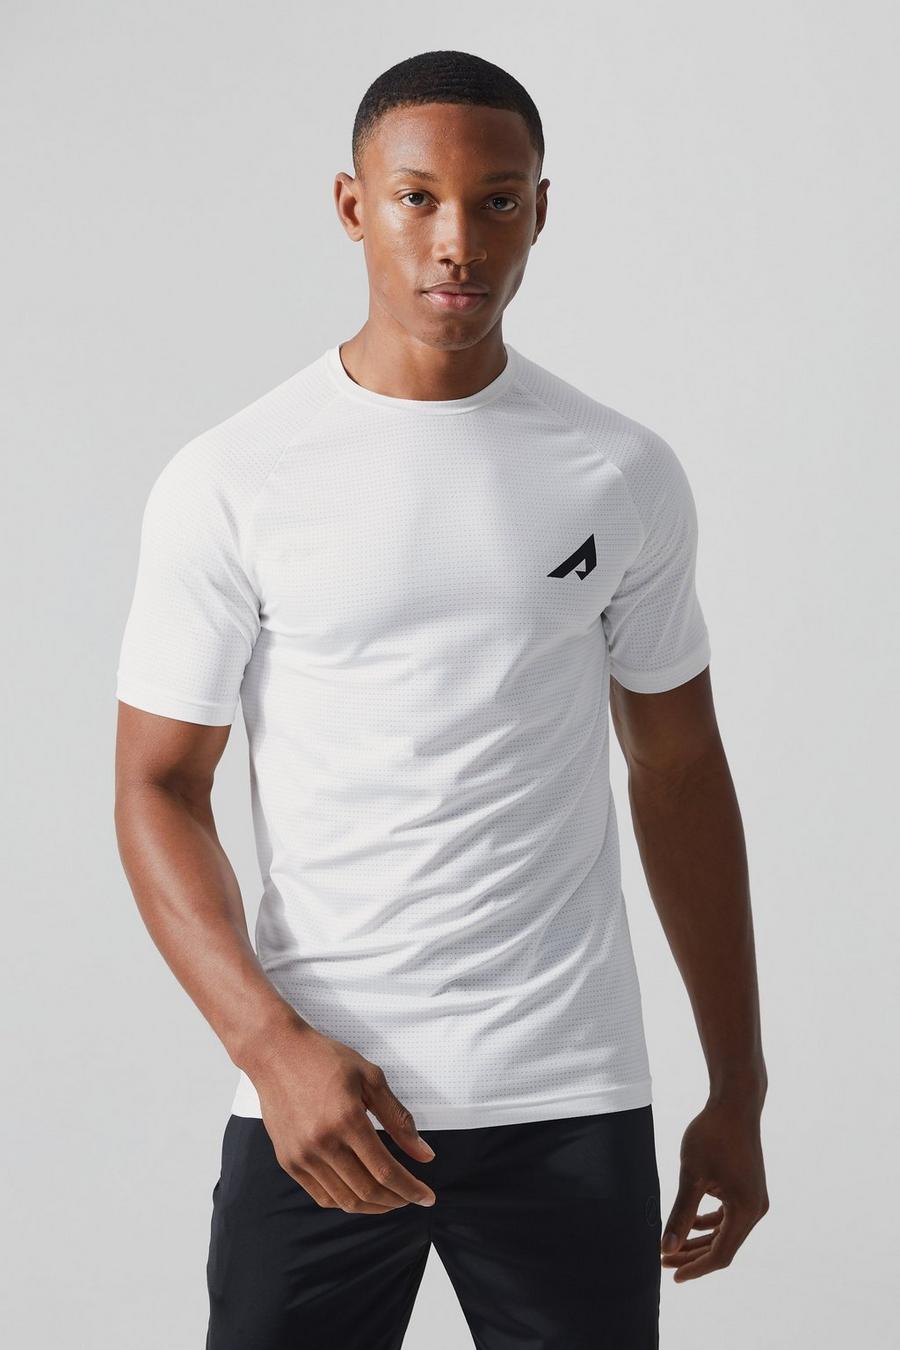 T-shirt Active attillata per alta performance in rete, White